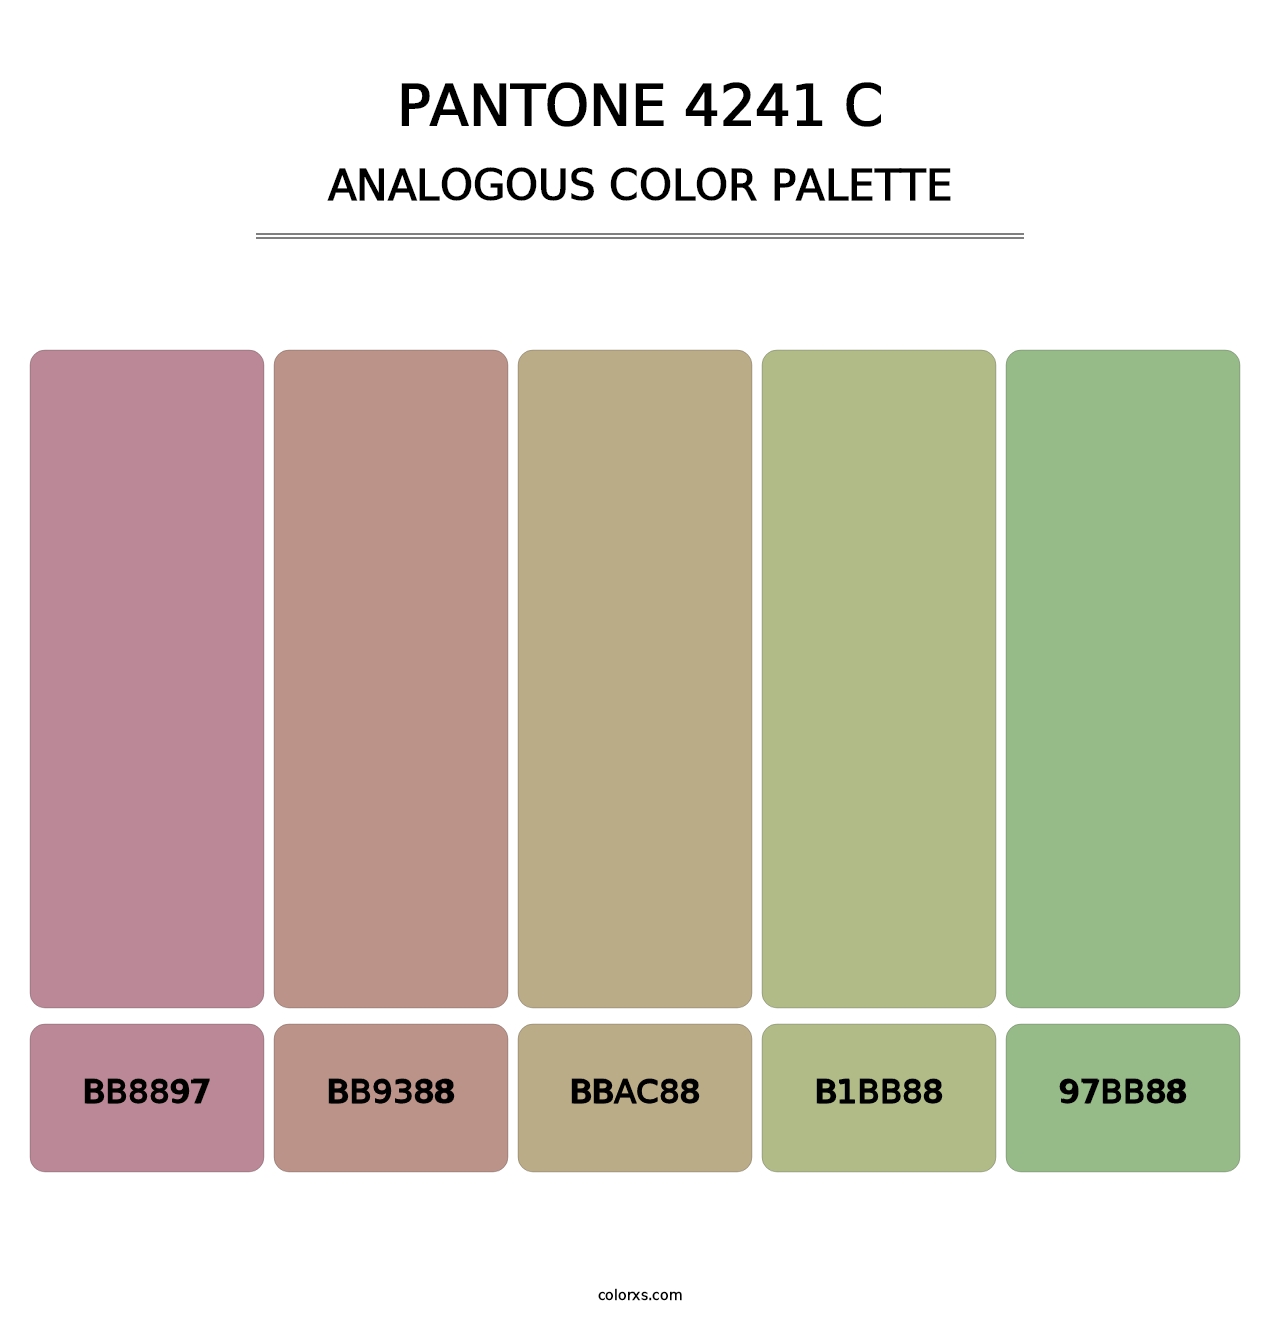 PANTONE 4241 C - Analogous Color Palette